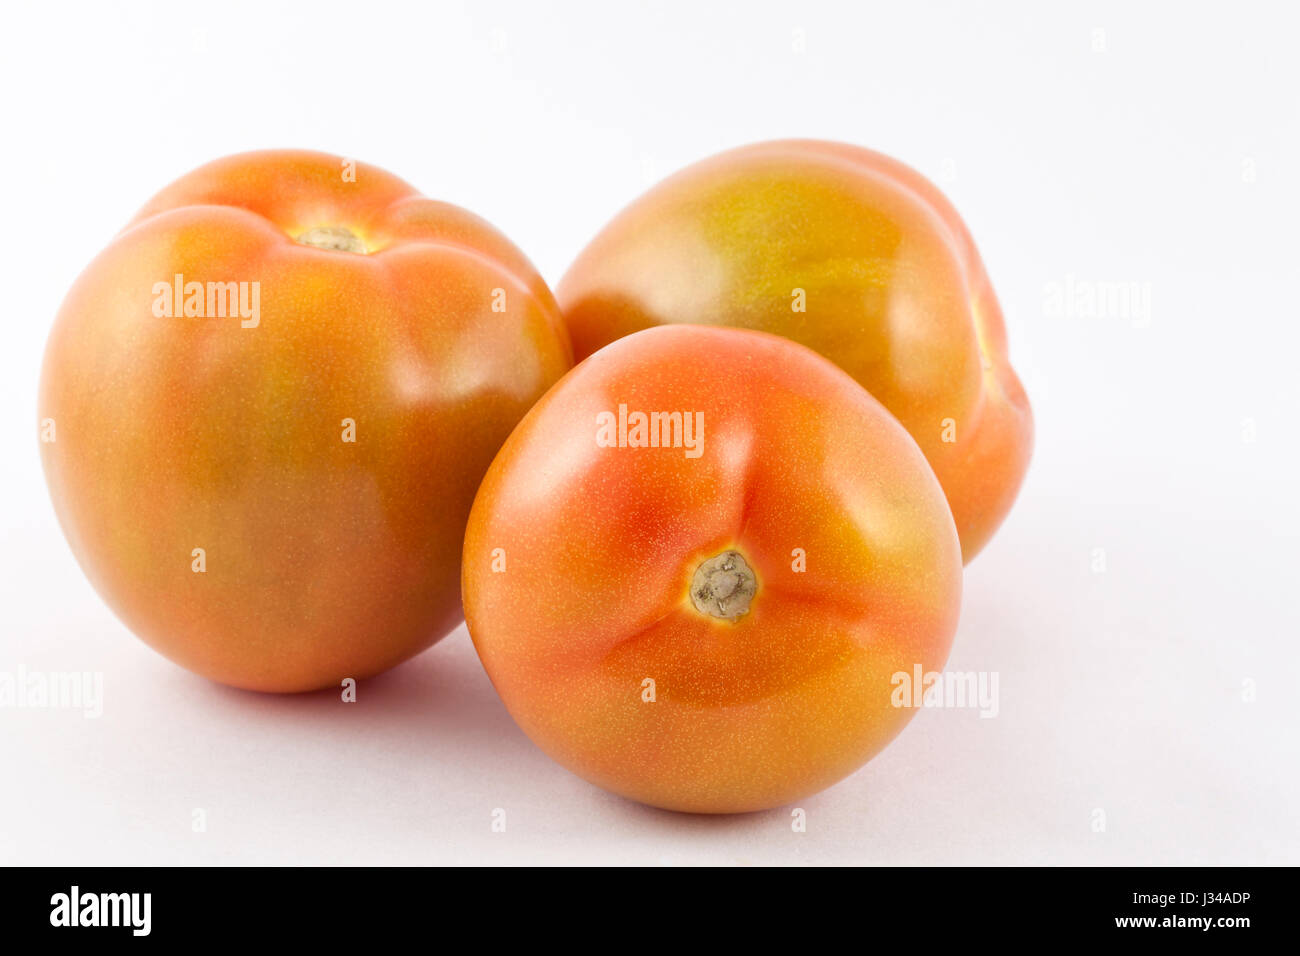 Il pomodoro (Lycopersicon esculentum) isolato in uno sfondo bianco Foto Stock